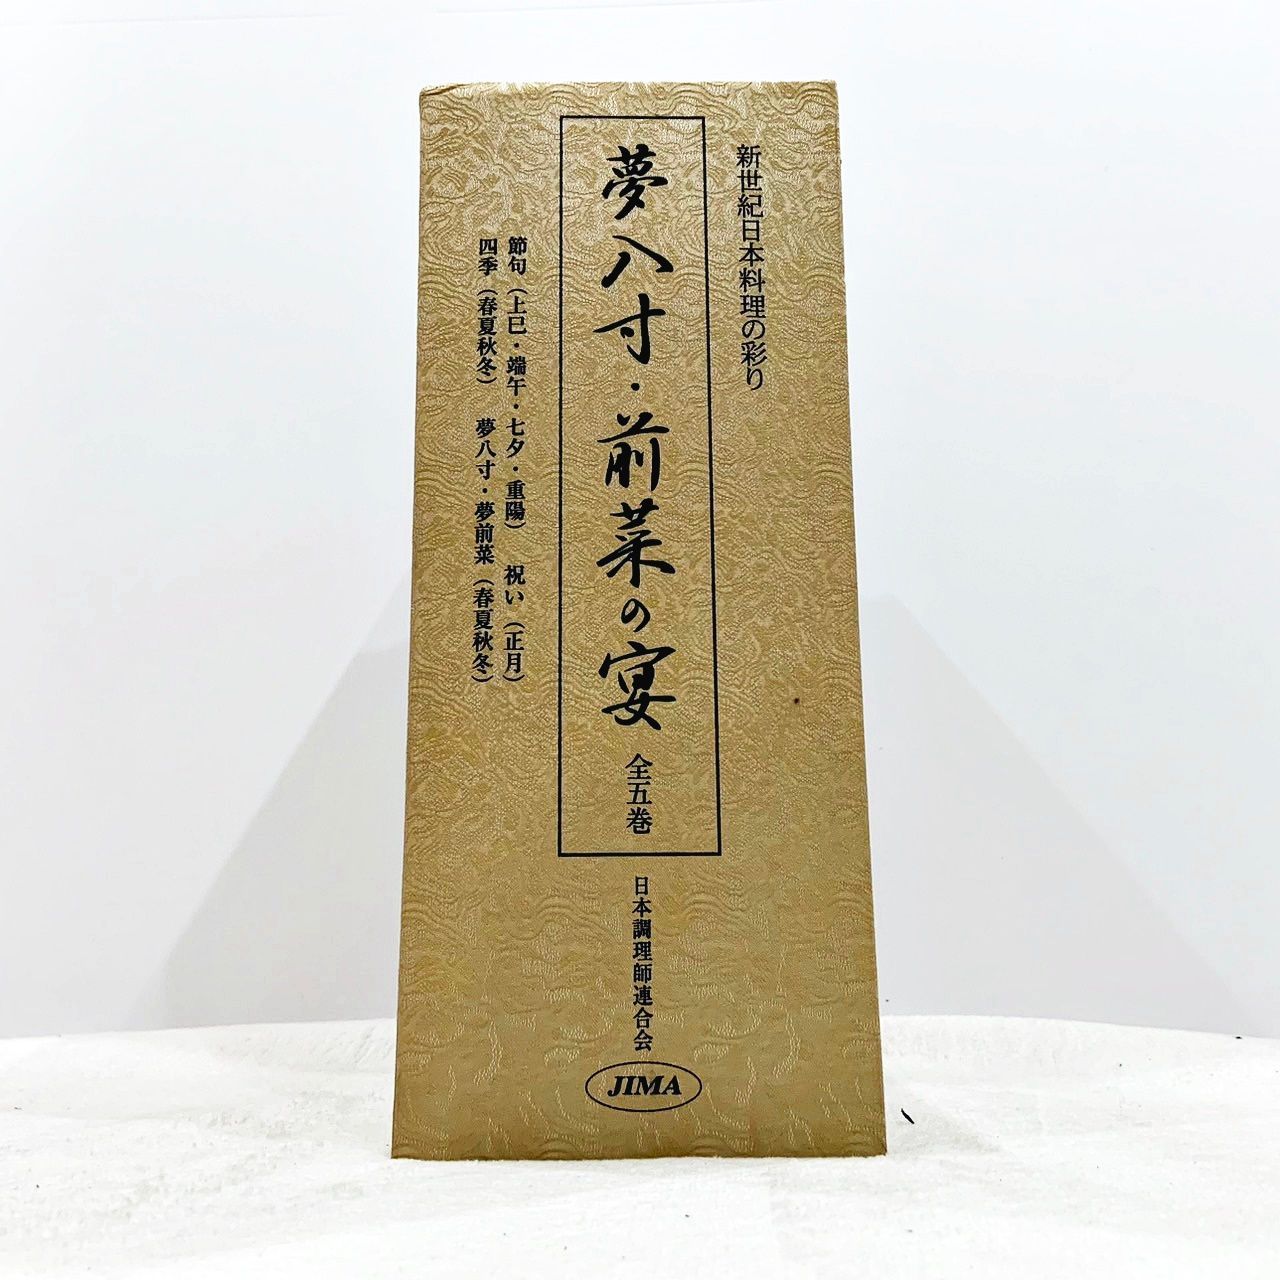 夢八寸・前菜の宴 全5巻セット 日本調理師連合会 - メルカリ